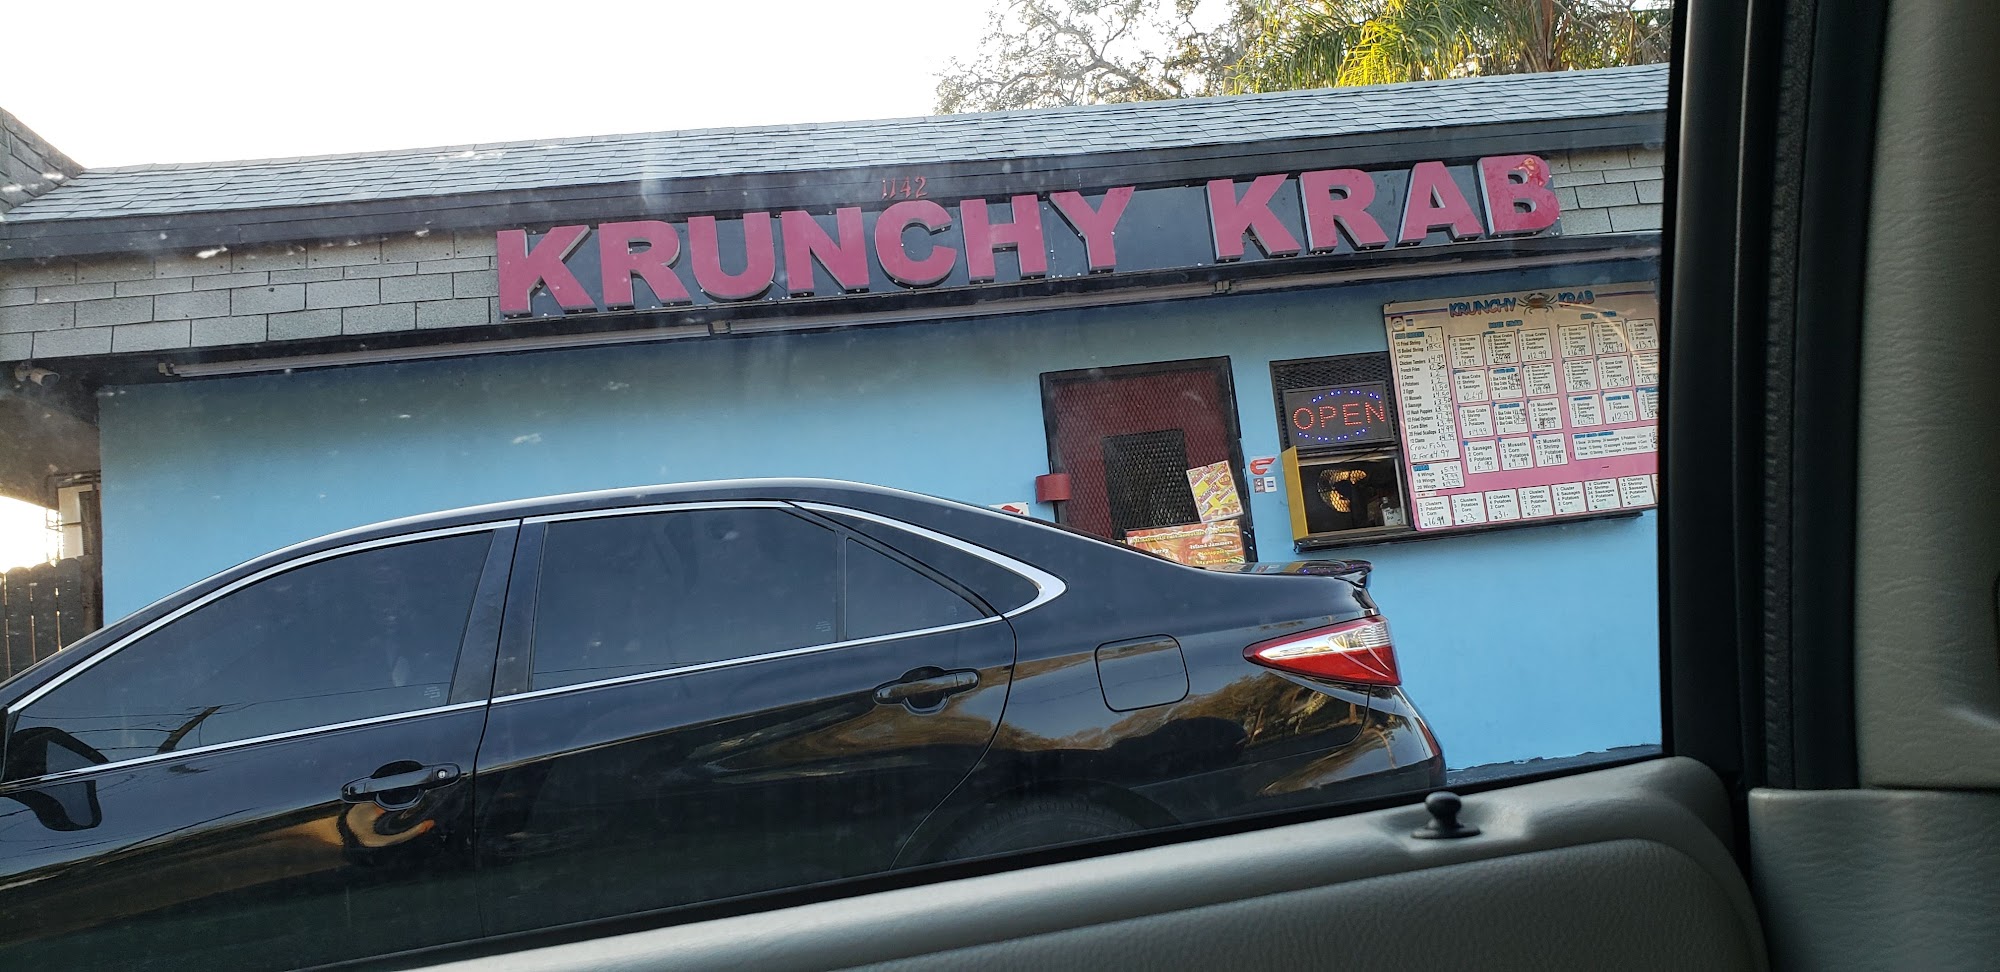 Krunchy krab seafood & wings restaurant